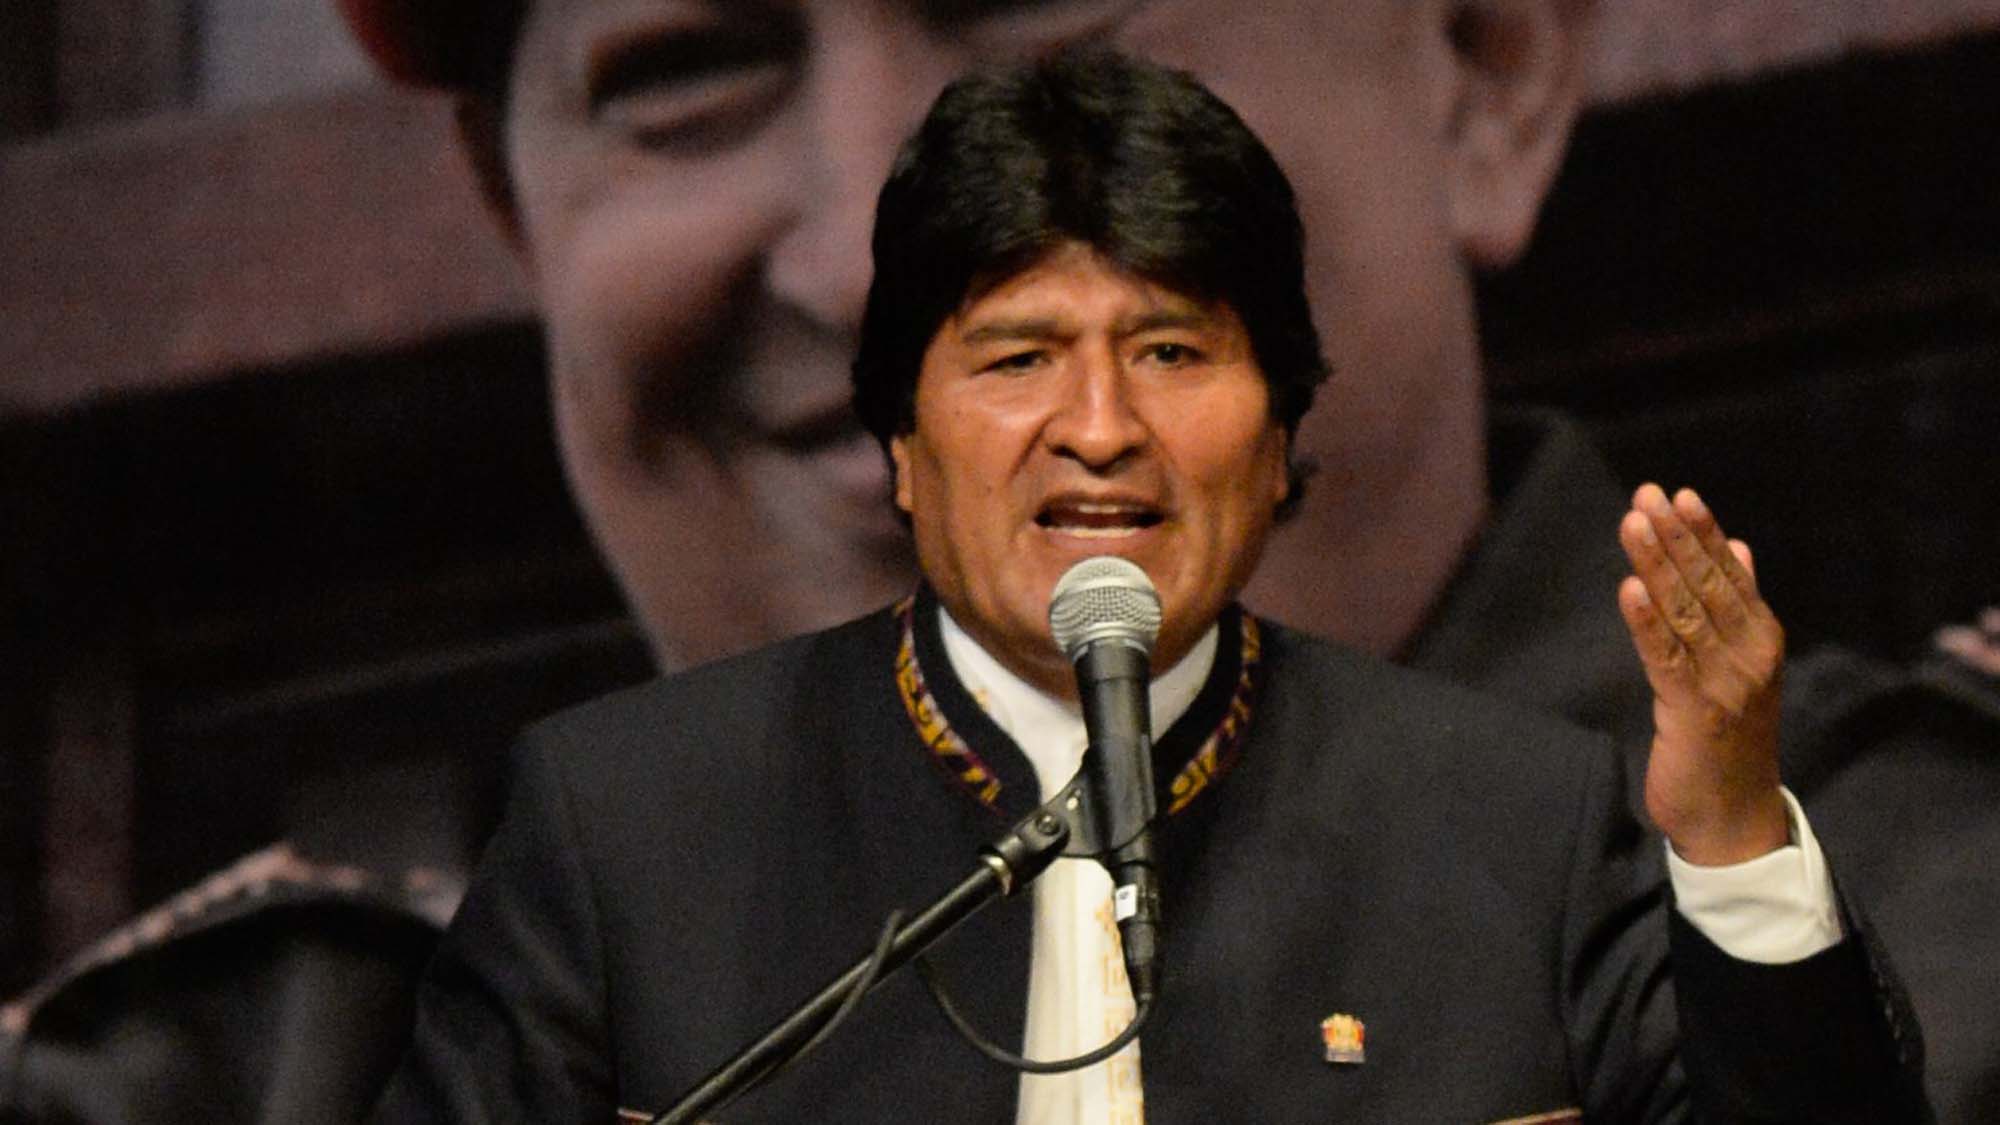 A través de twitter, el mandatario boliviano acusó a Trump de conspirar para "intervenir y dominar" al pueblo venezolano